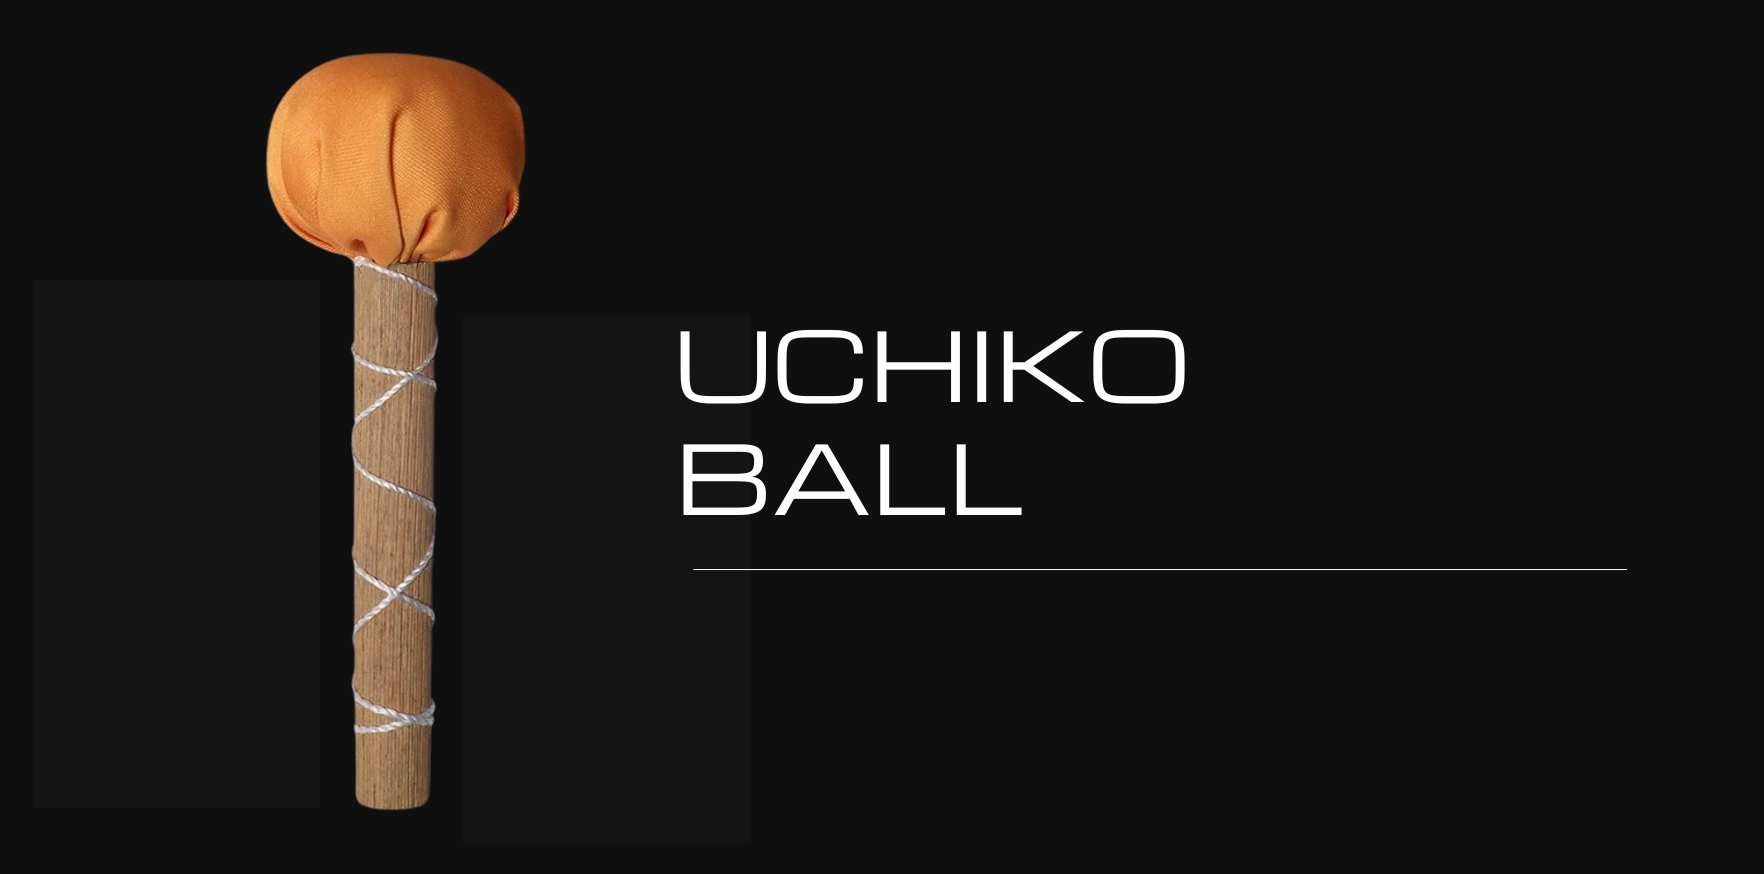 uchiko ball